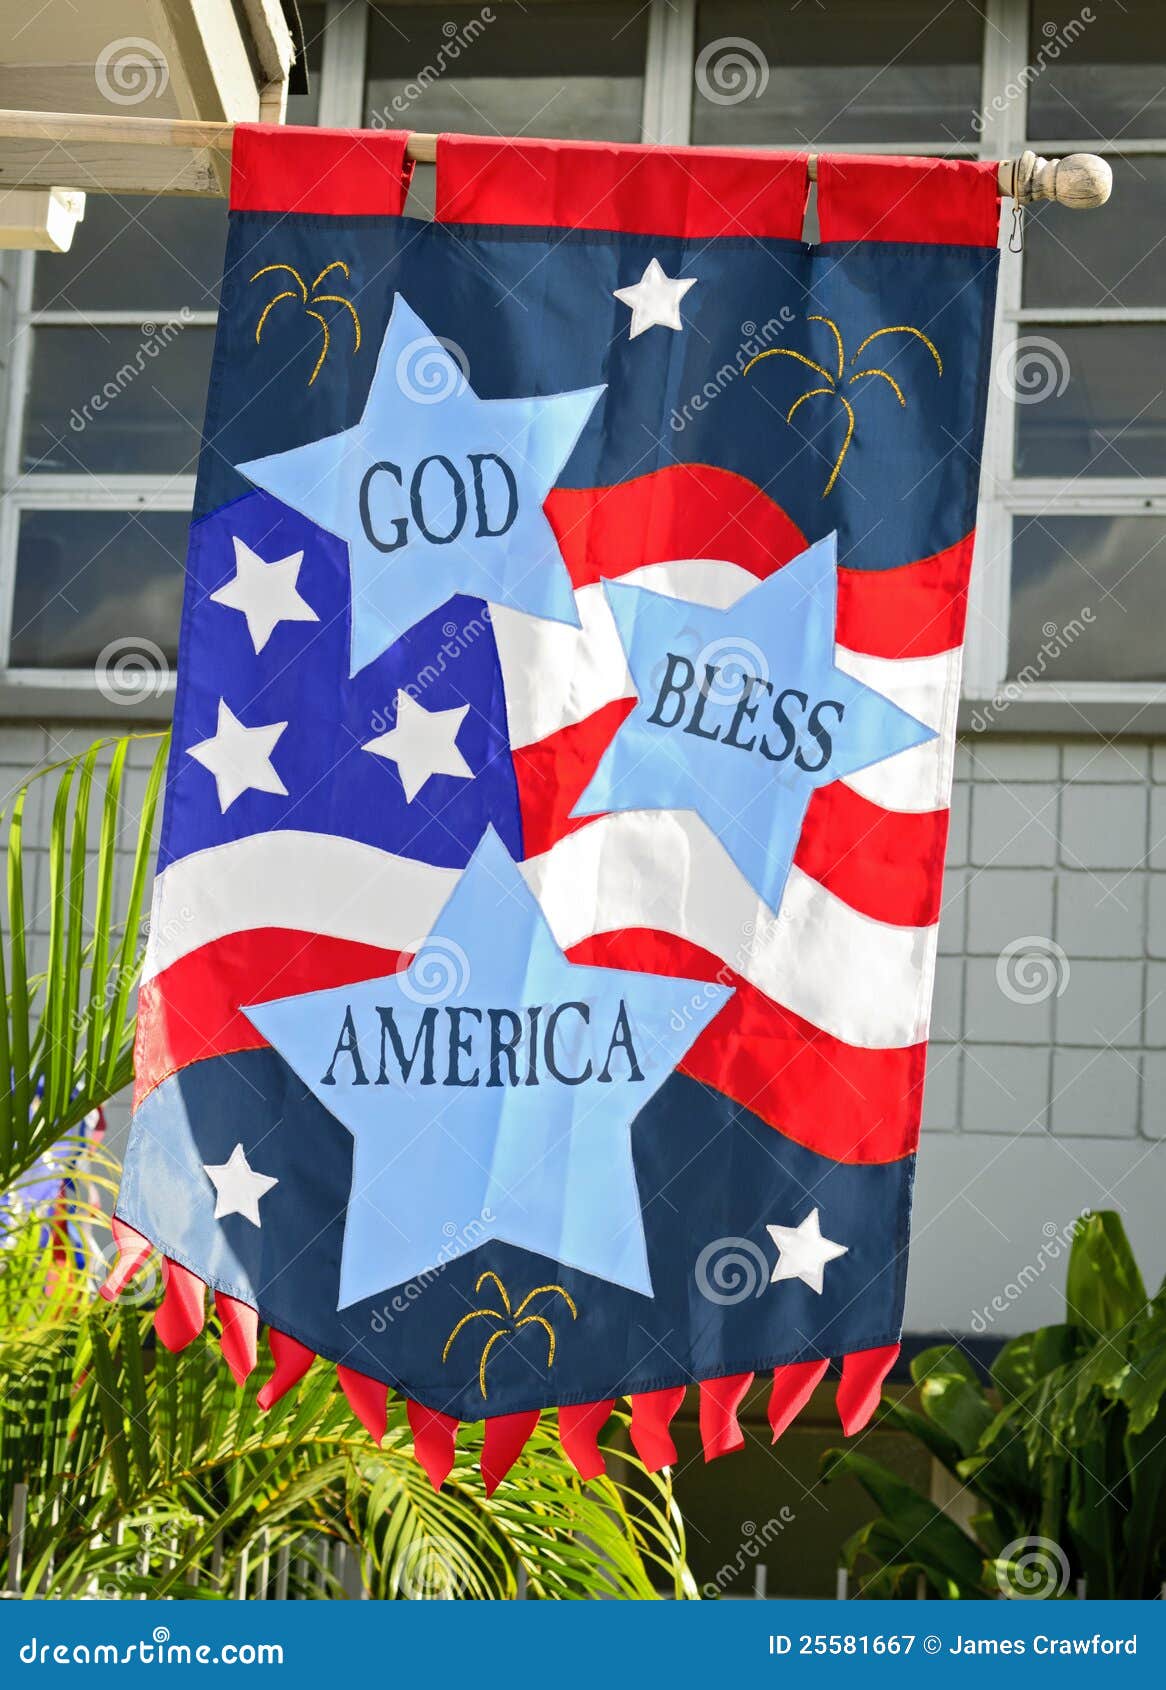 god bless america flag